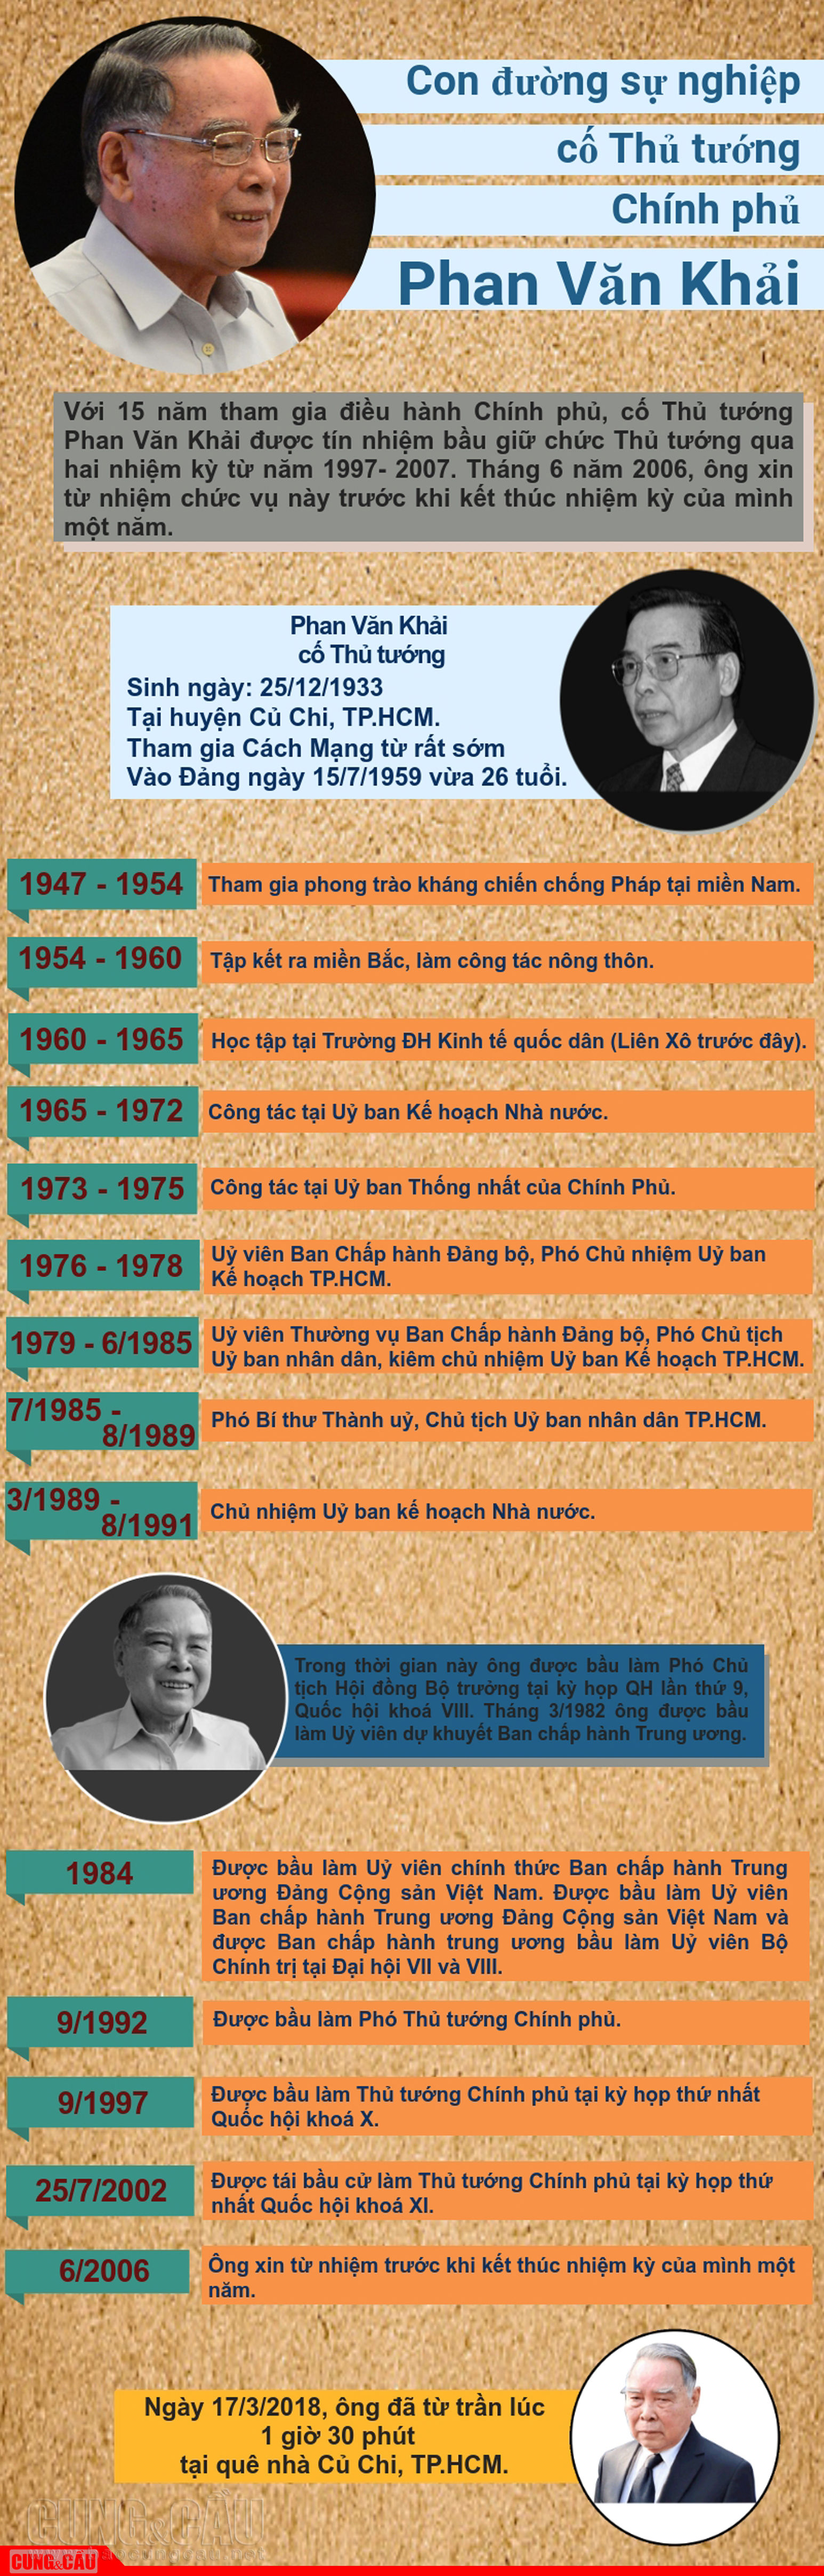 Sự nghiệp của cố Thủ tướng Chính phủ Phan Văn Khải